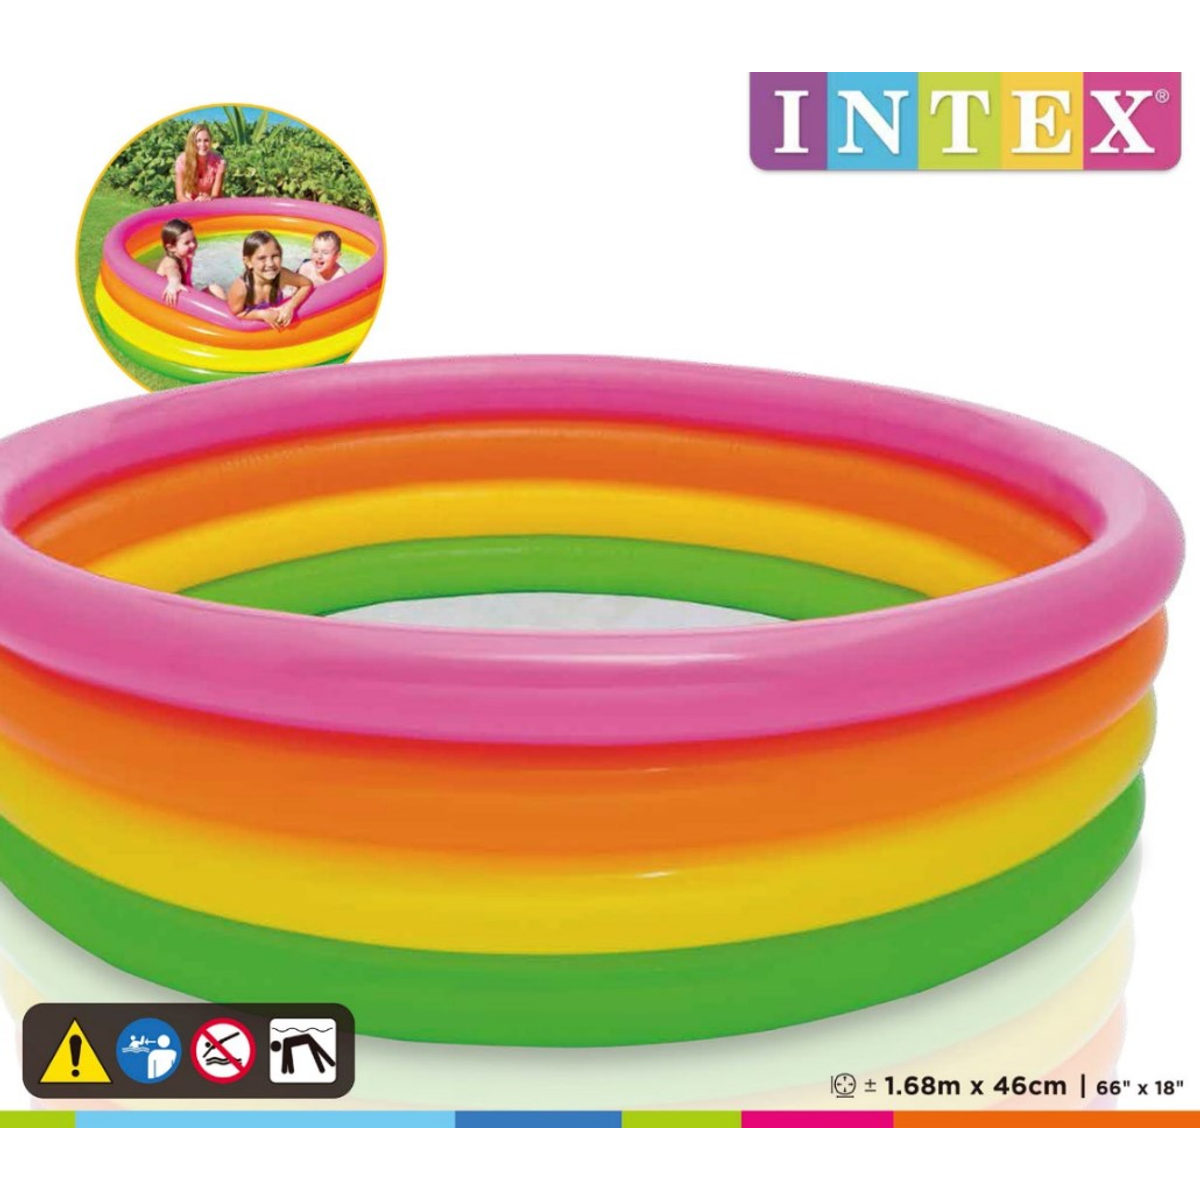 Intex 56441 Piscine pour enfants Sunset Glow (168X46cm)